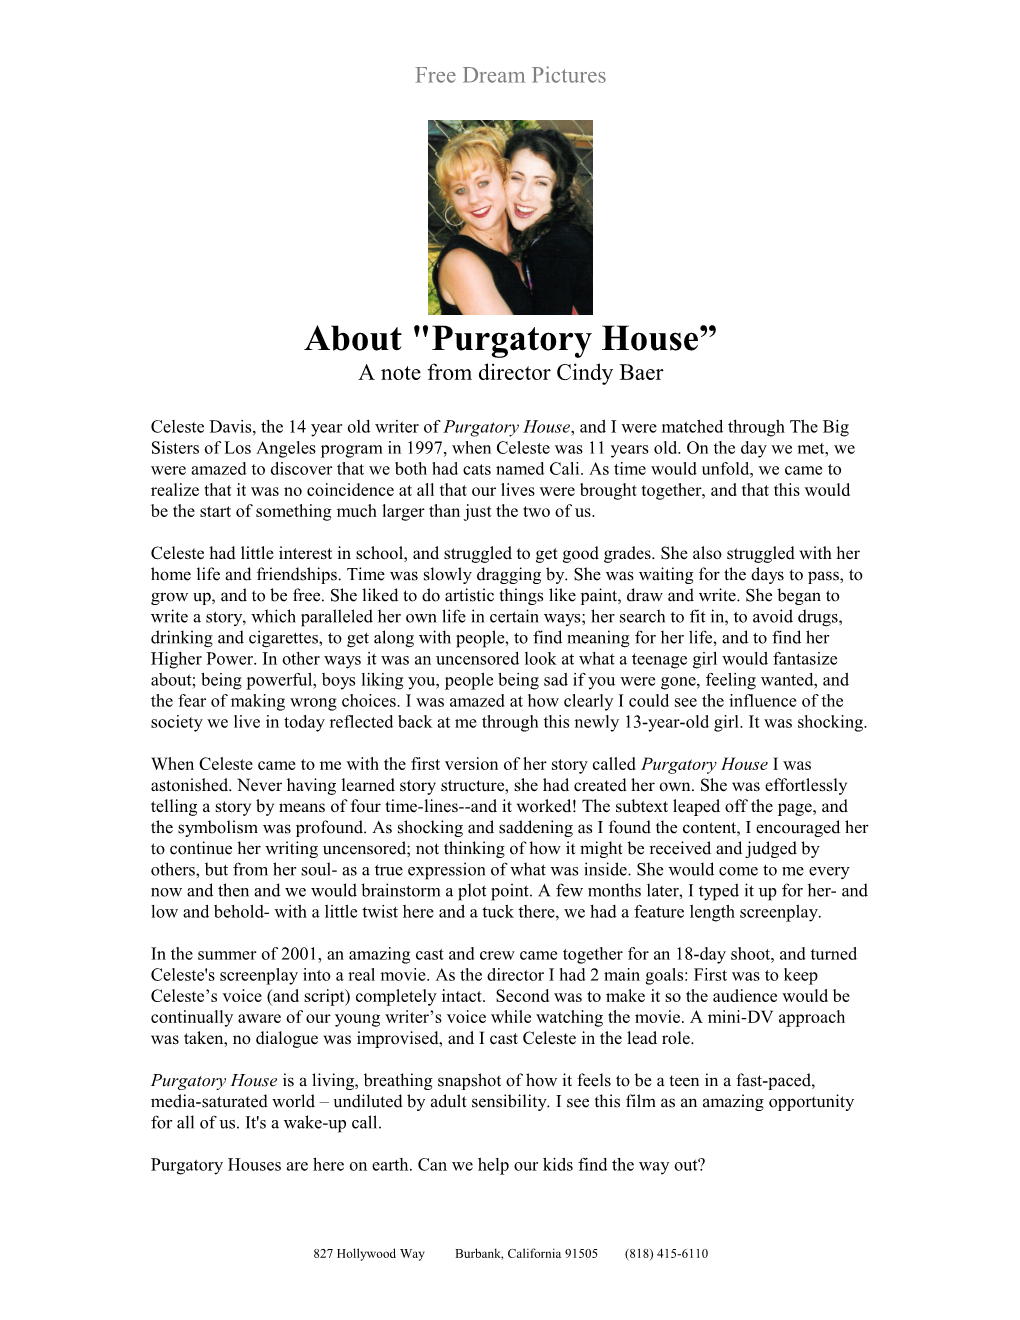 About Purgatory House